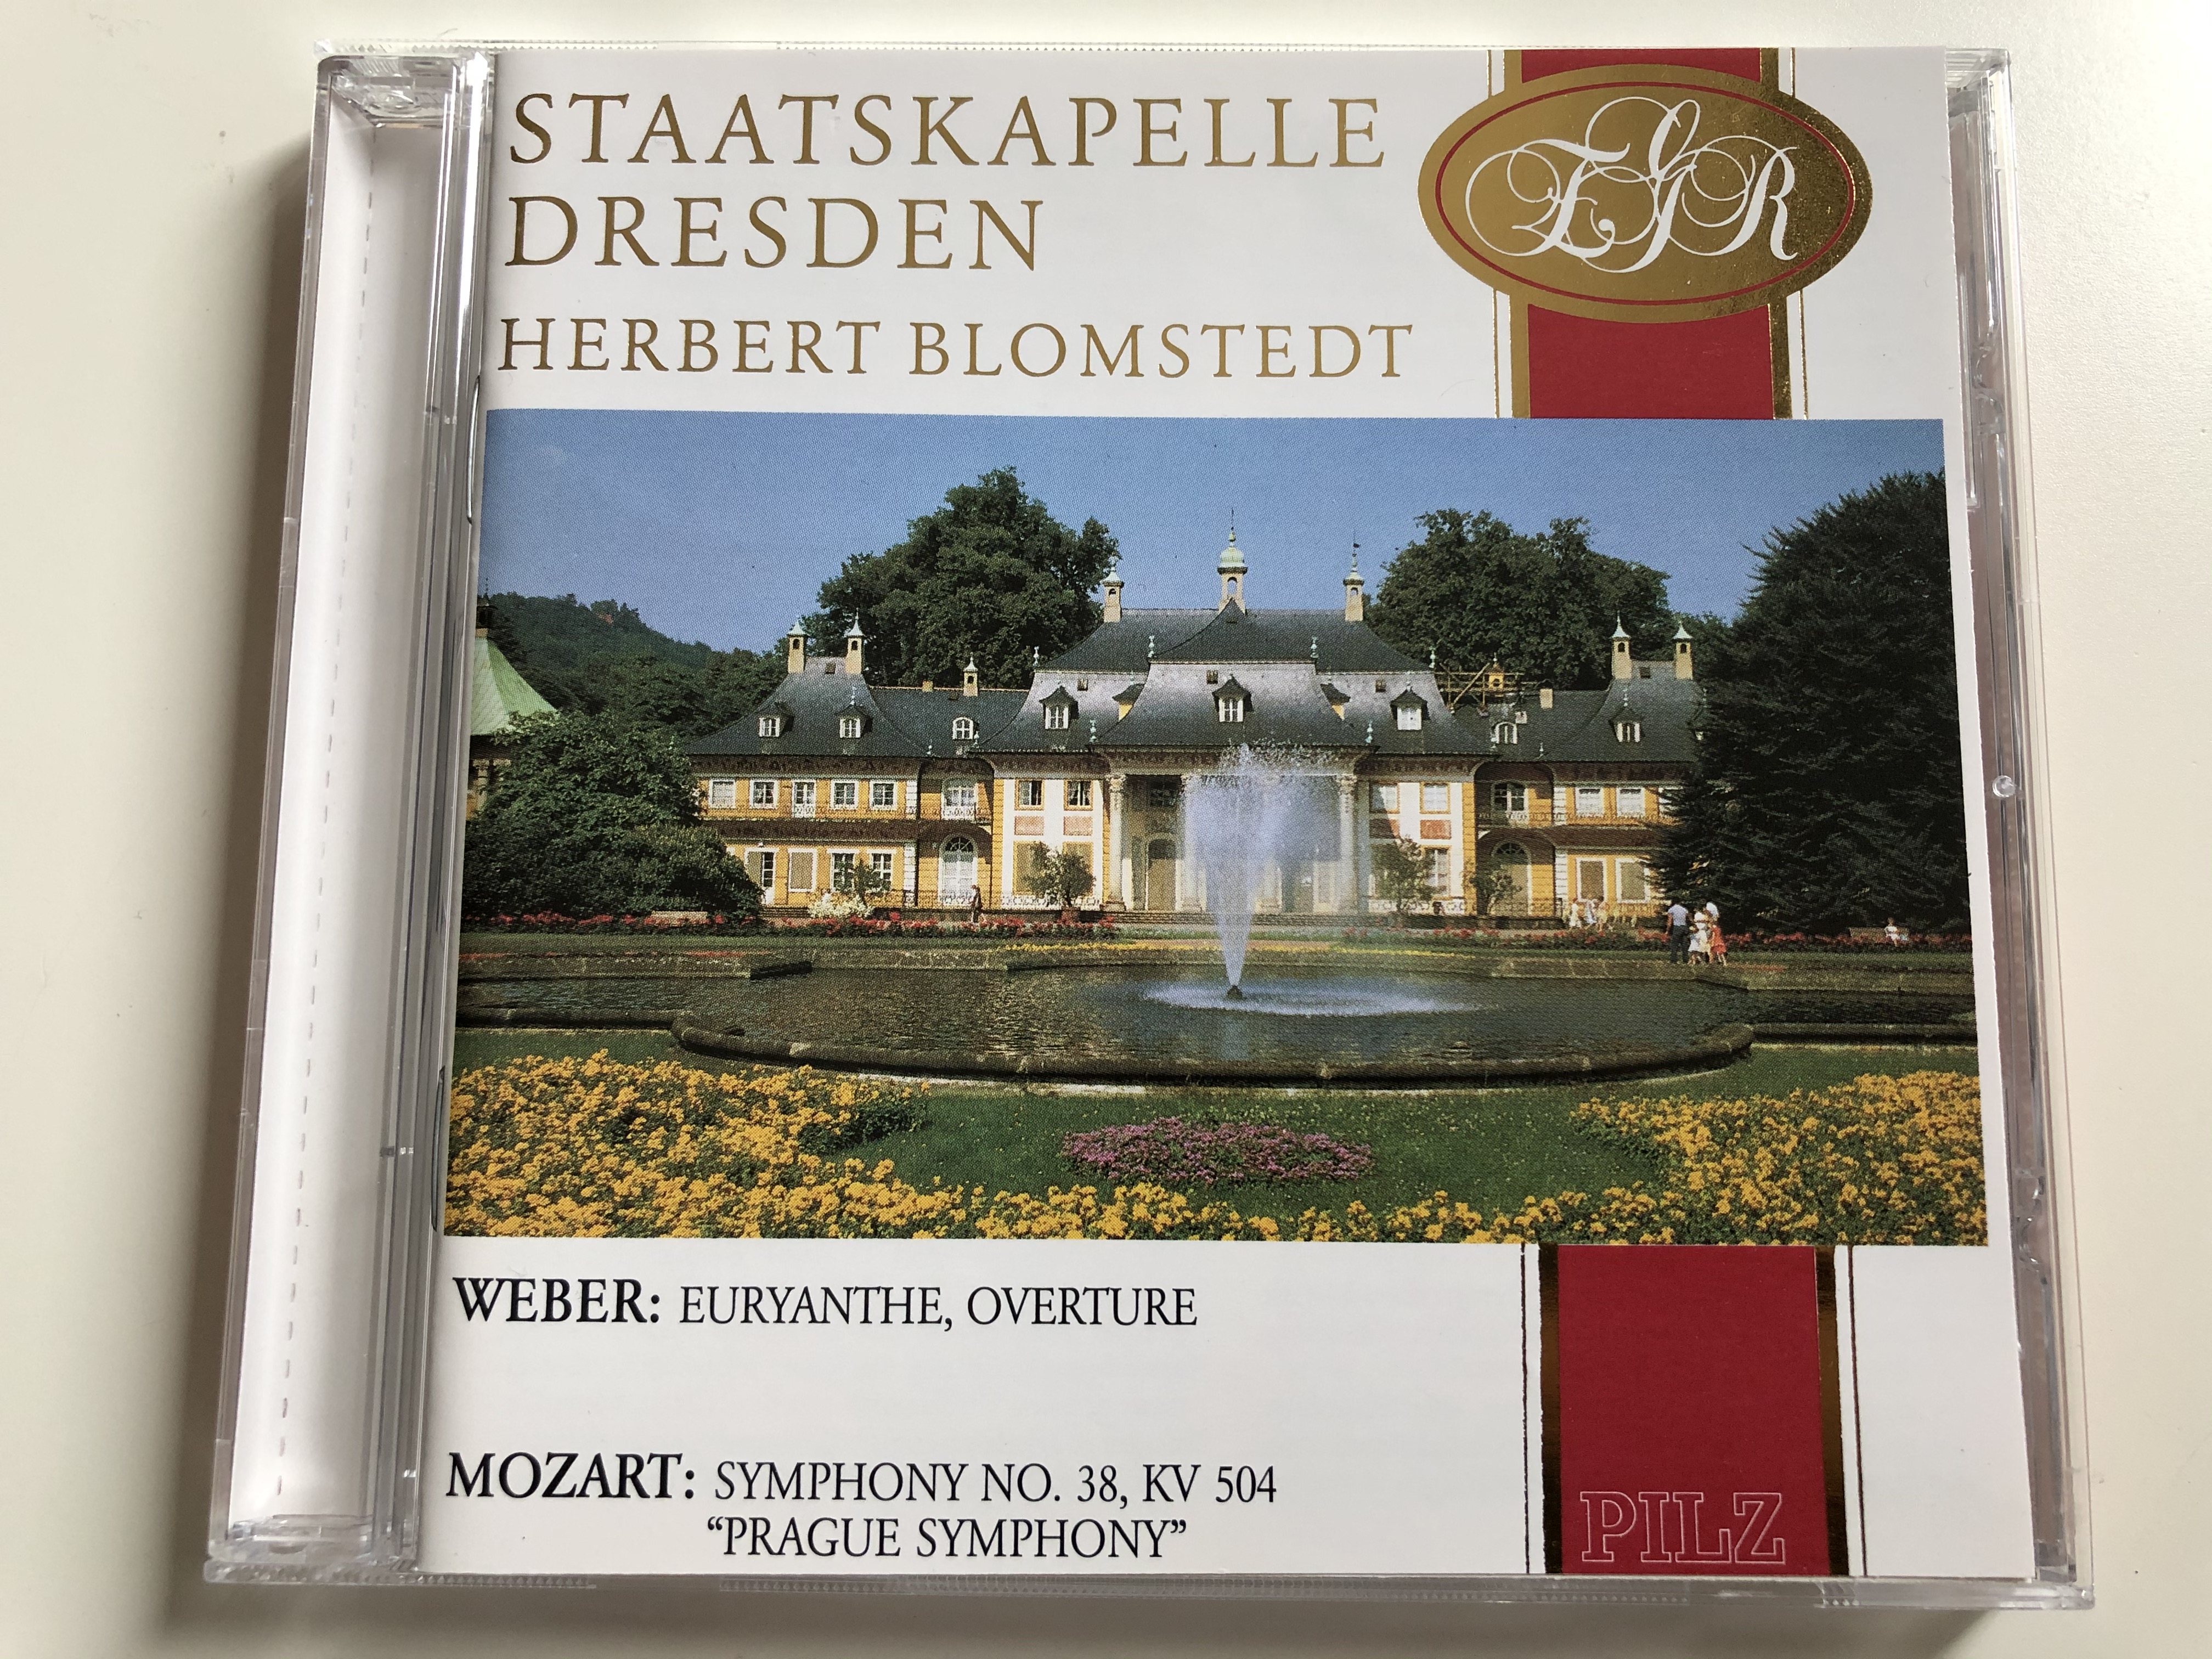 staatskapelle-dresden-herbert-blomstedt-weber-euryanthe-overture-mozart-symphony-no.-38-kv-504-prague-symphony-pilz-audio-cd-1990-stereo-44-2058-2-1-.jpg